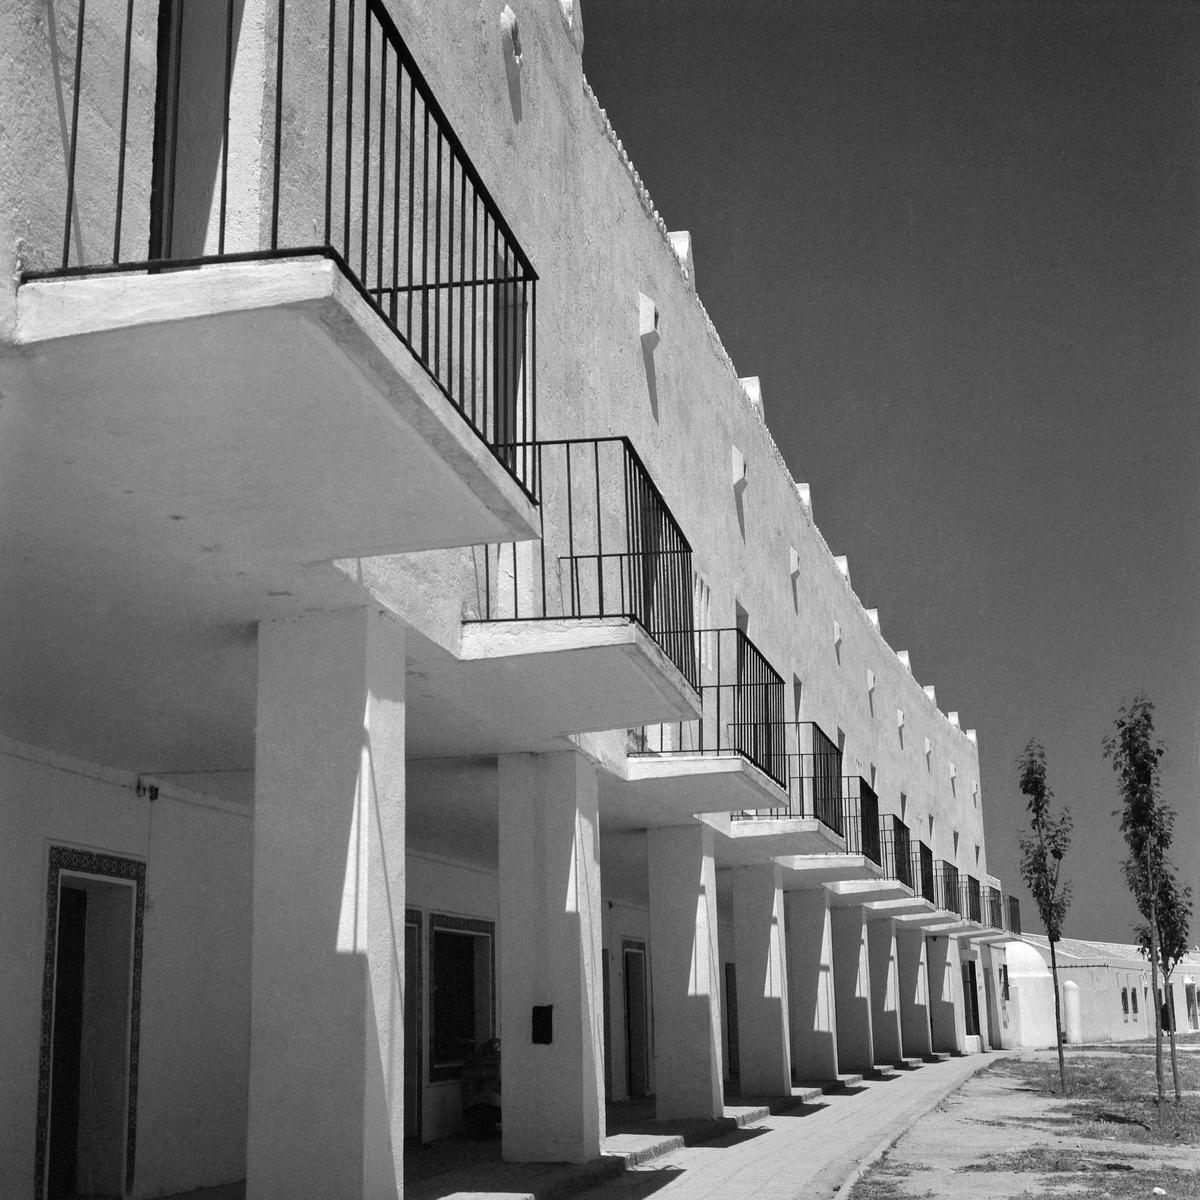 Conjunto de viviendas en Esquivel (Sevilla), ca. 1952. Fotografía de Joaquín del Palacio, Kindel.